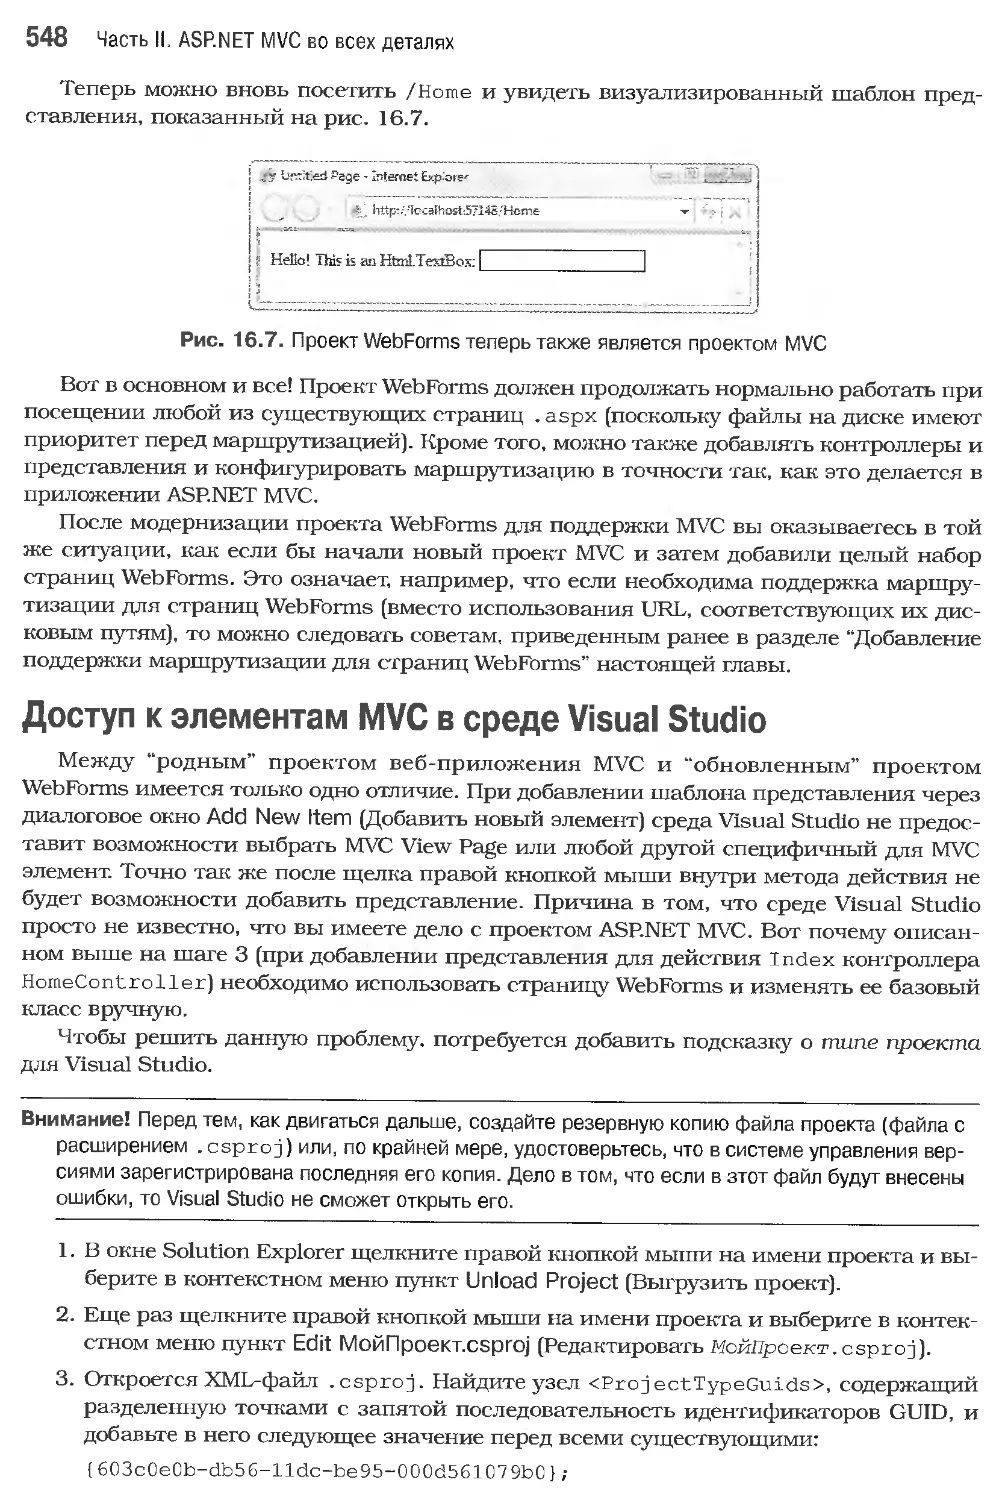 Доступ к элементам MVC в среде Visual Studio